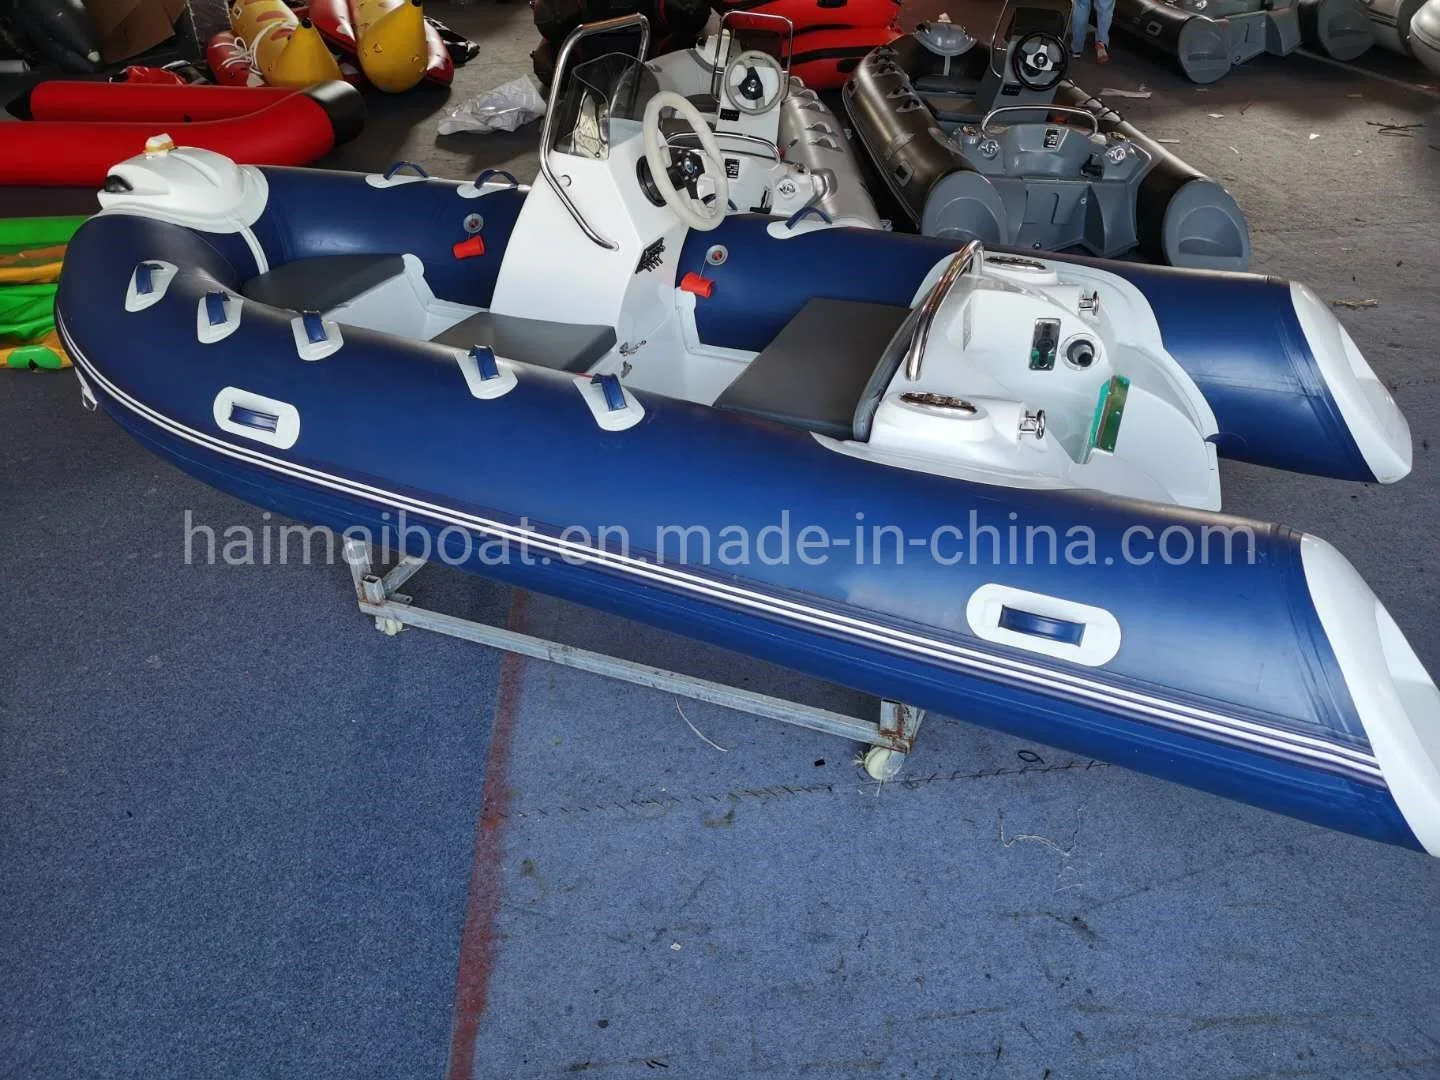 China fabricante de embarcaciones profesionales 11,8M Fibra de vidrio de 3,6 millones de embarcaciones inflables narval patrulla militar Barco Barco de motor fueraborda Bote Panga bote de rescate con CE